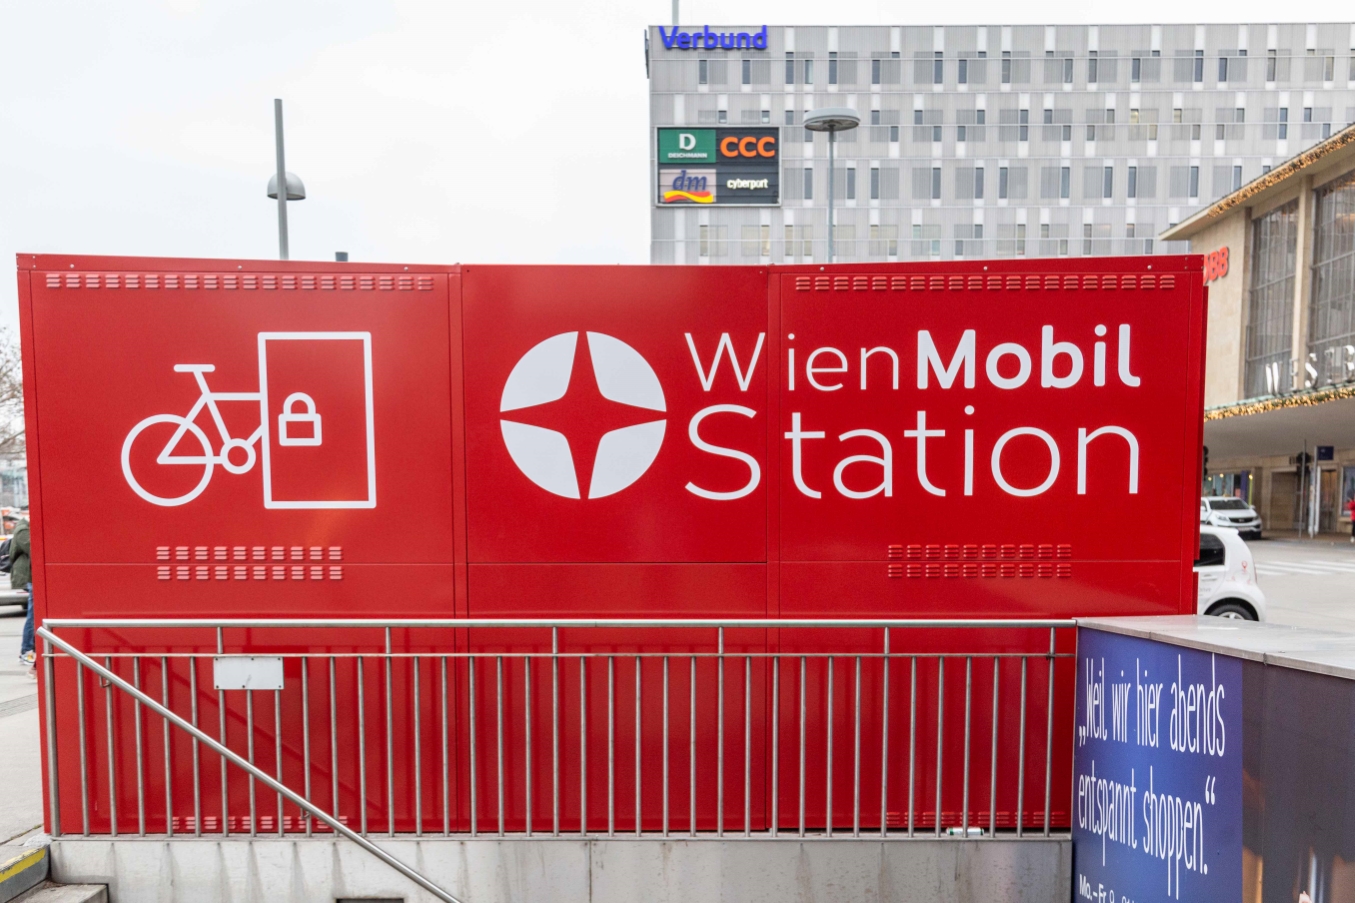 Am Standort Westbahnhof werden Öffis, Citybikes, E-Scooter, Radabstellboxen und das OEBB-Carsharing angeboten.